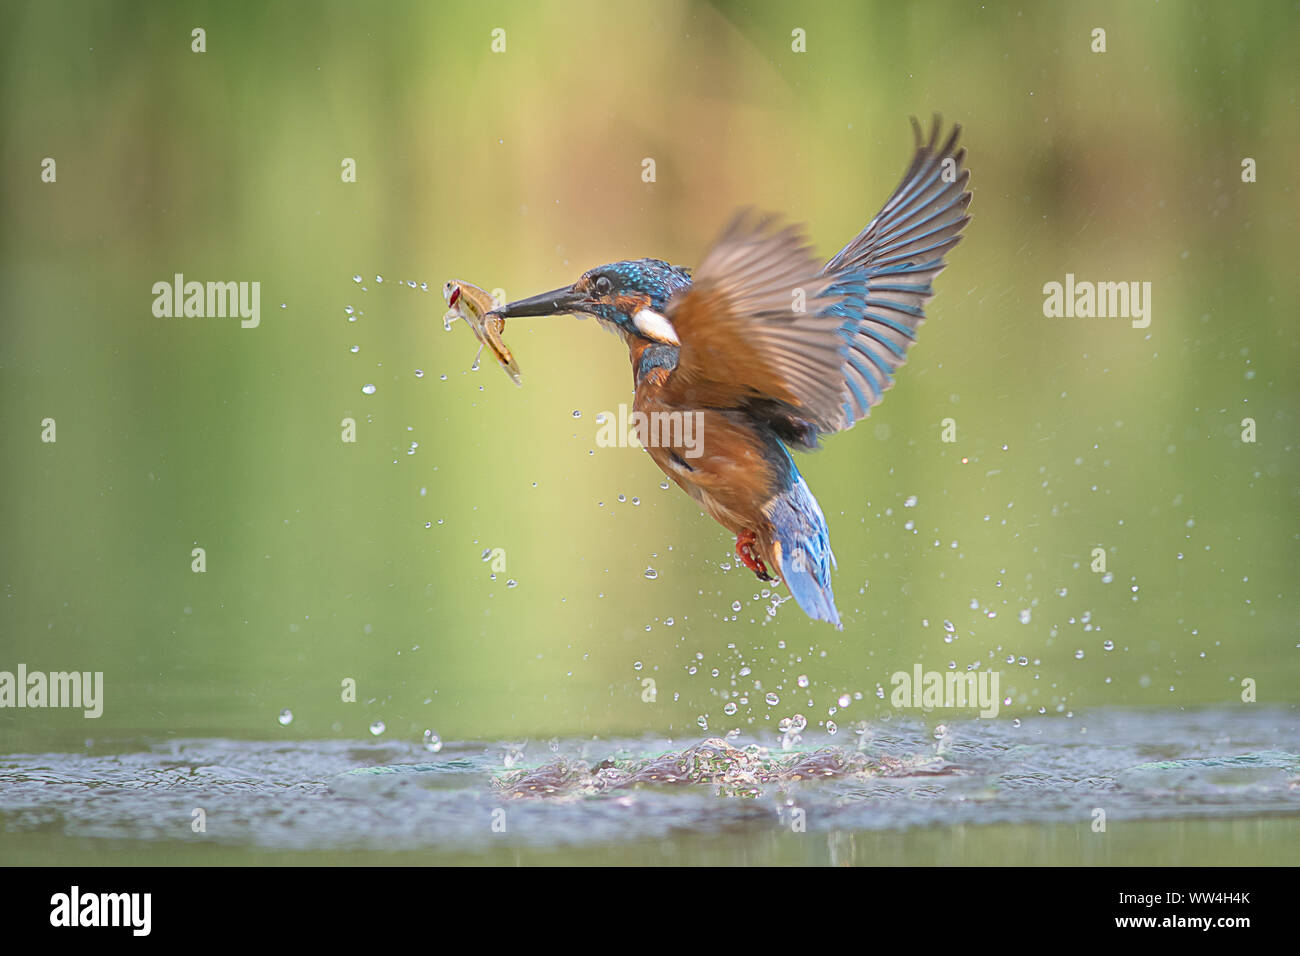 Un maschio di martin pescatore Alcedo atthis lascia l'acqua con un minnow nel suo becco e le ali stese Foto Stock